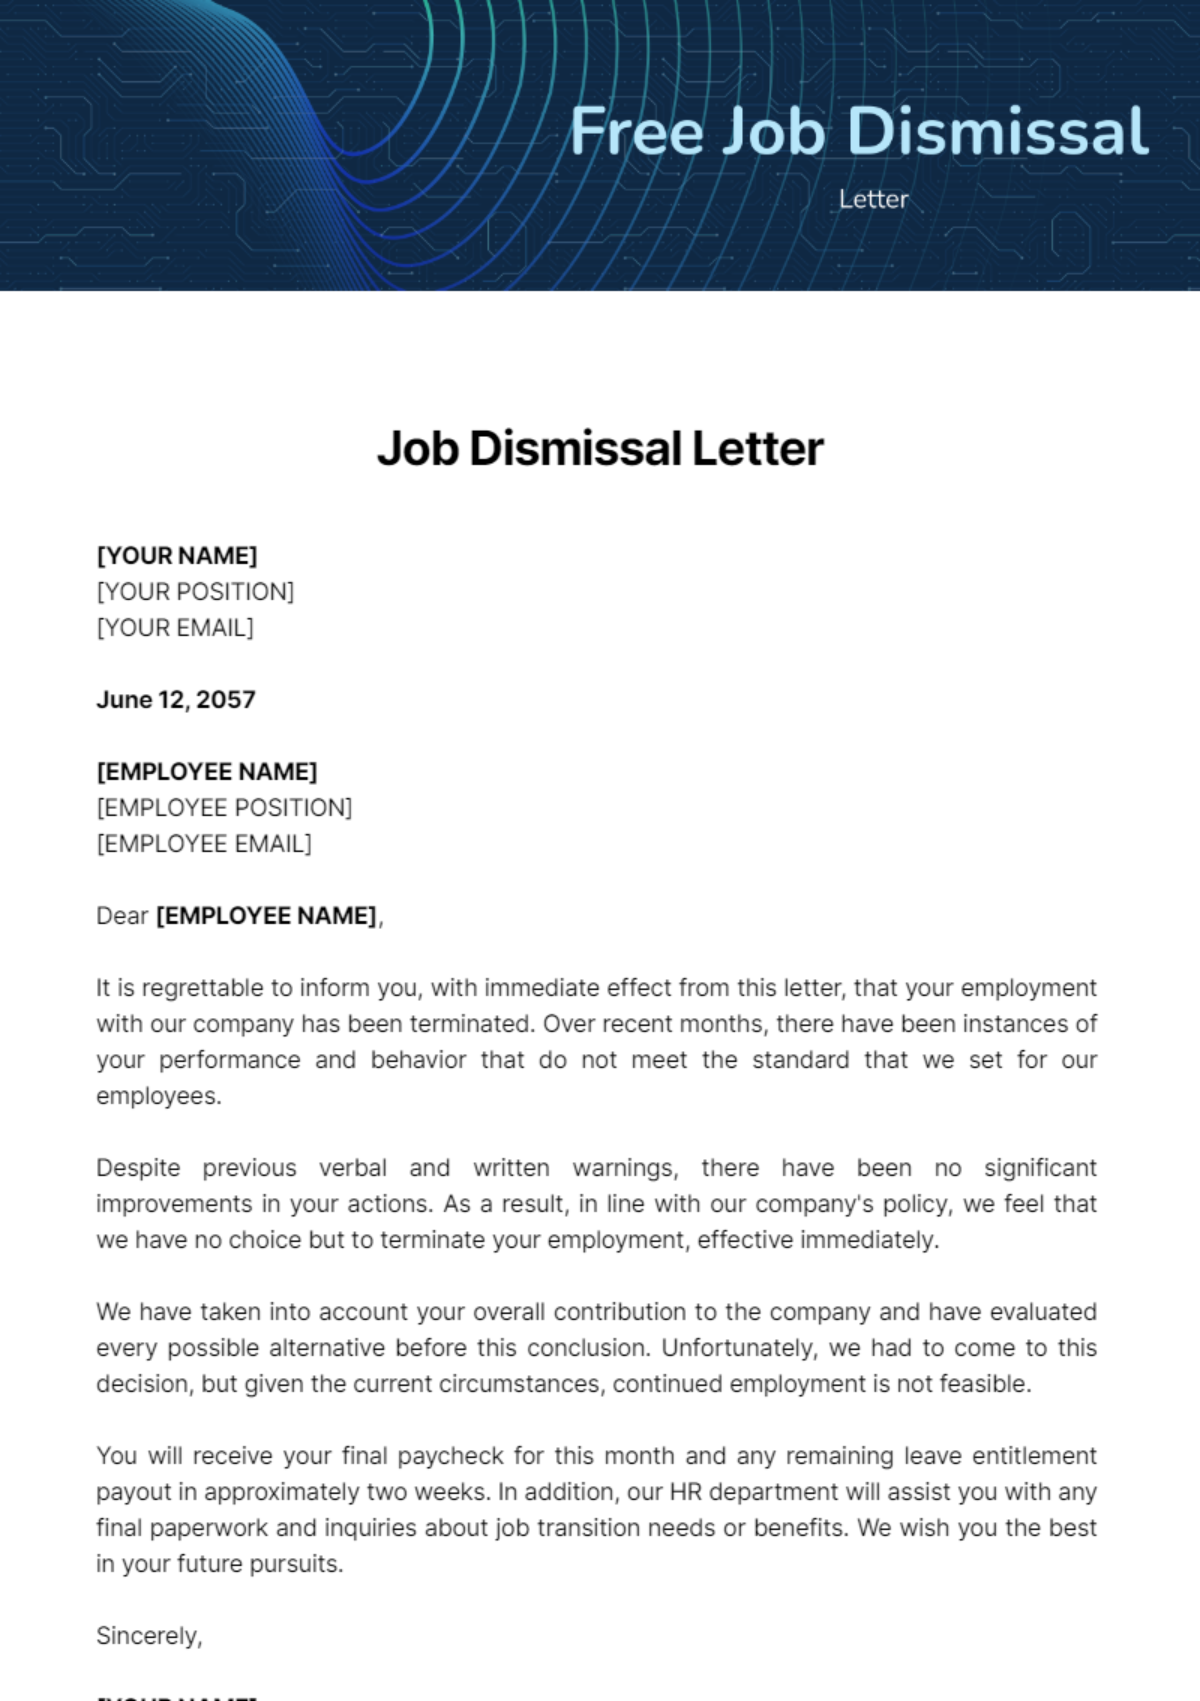 Job Dismissal Letter Template